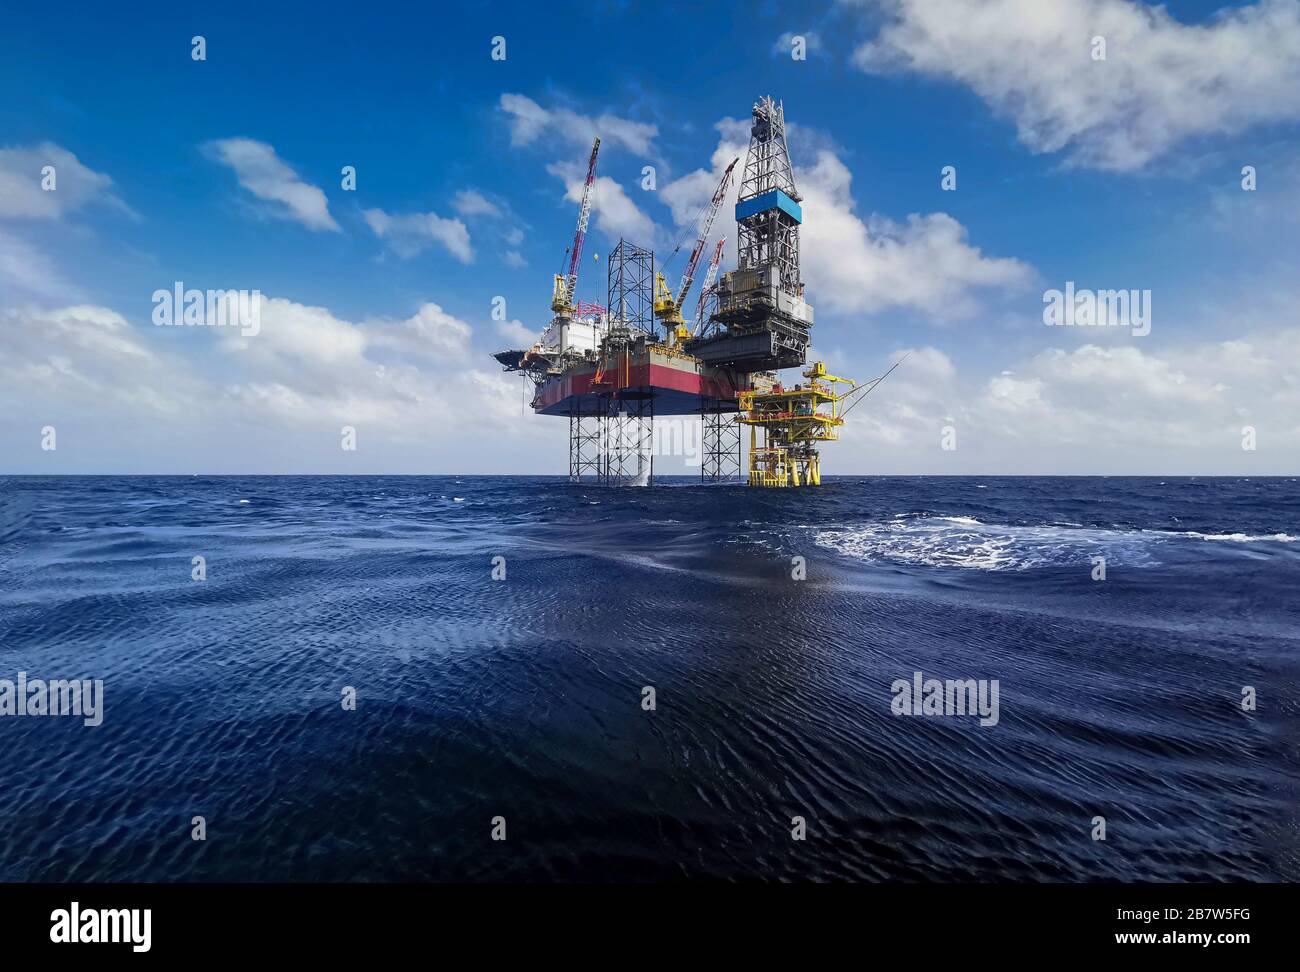 engin de levage à cric avec plate-forme de forage à fond d'huile dans les champs pétrolifères avec beau ciel bleu nuageux au bord de l'océan Banque D'Images